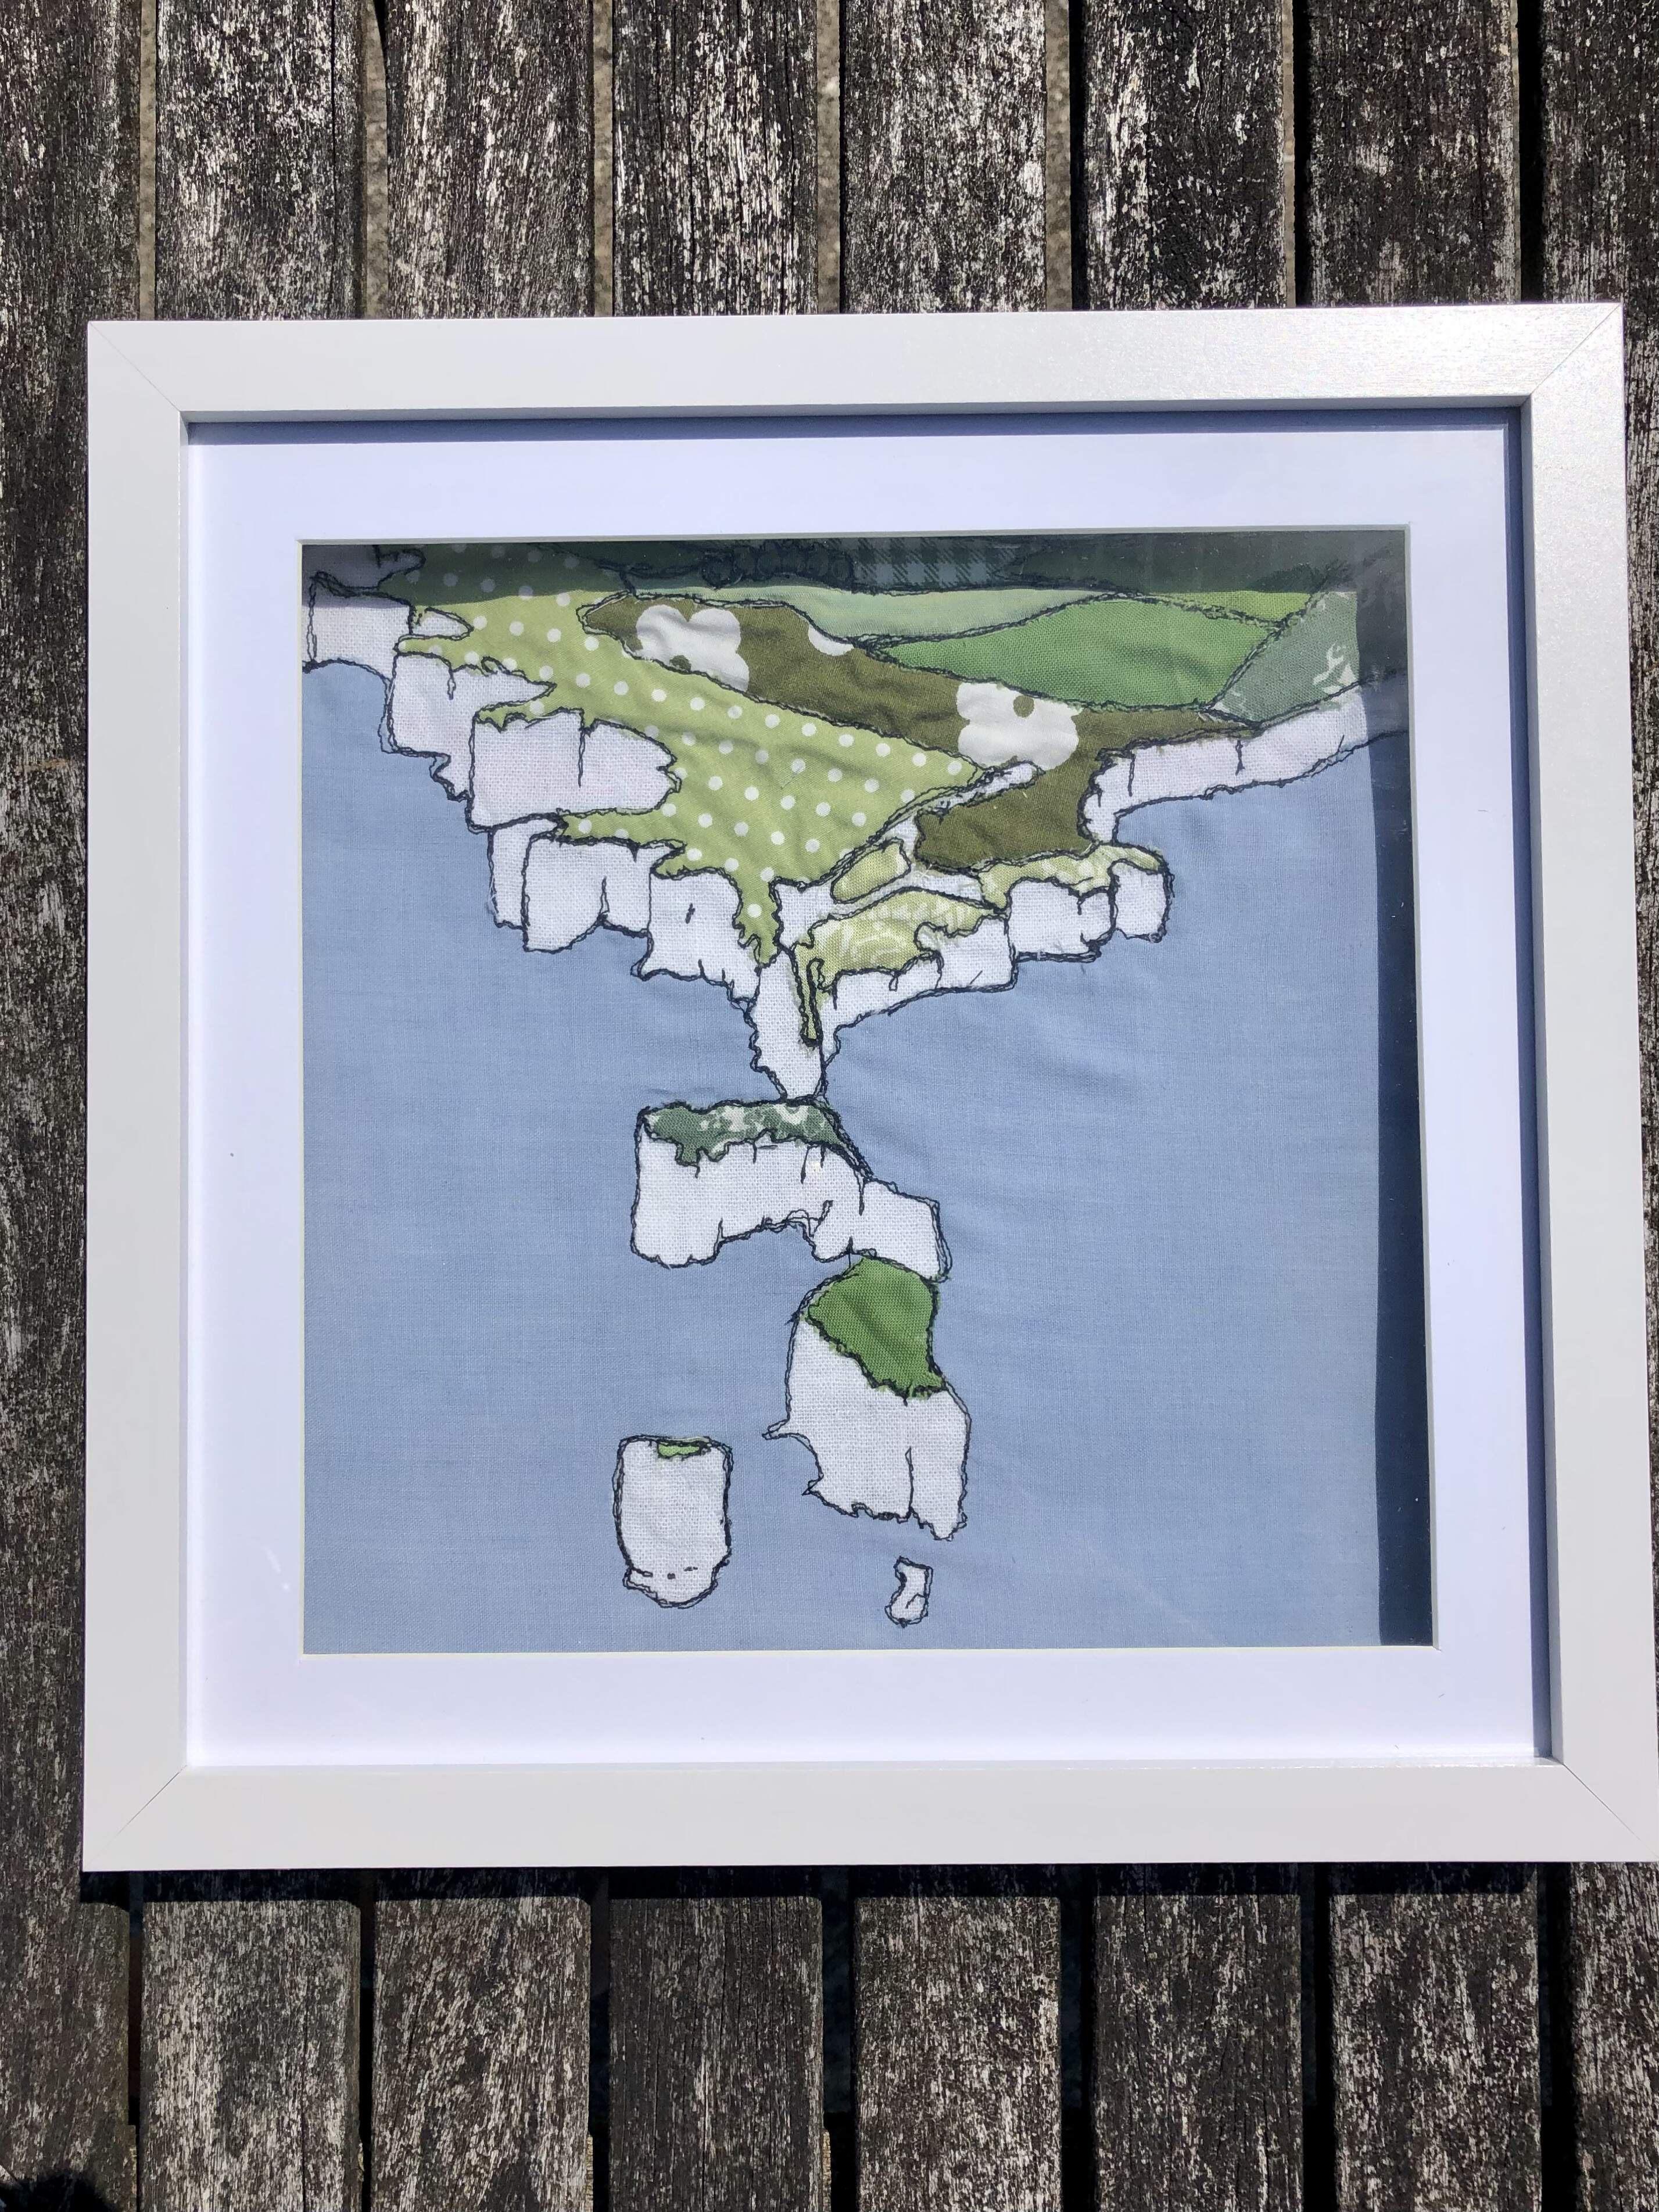 Dorset coast created using fabric, thread and love